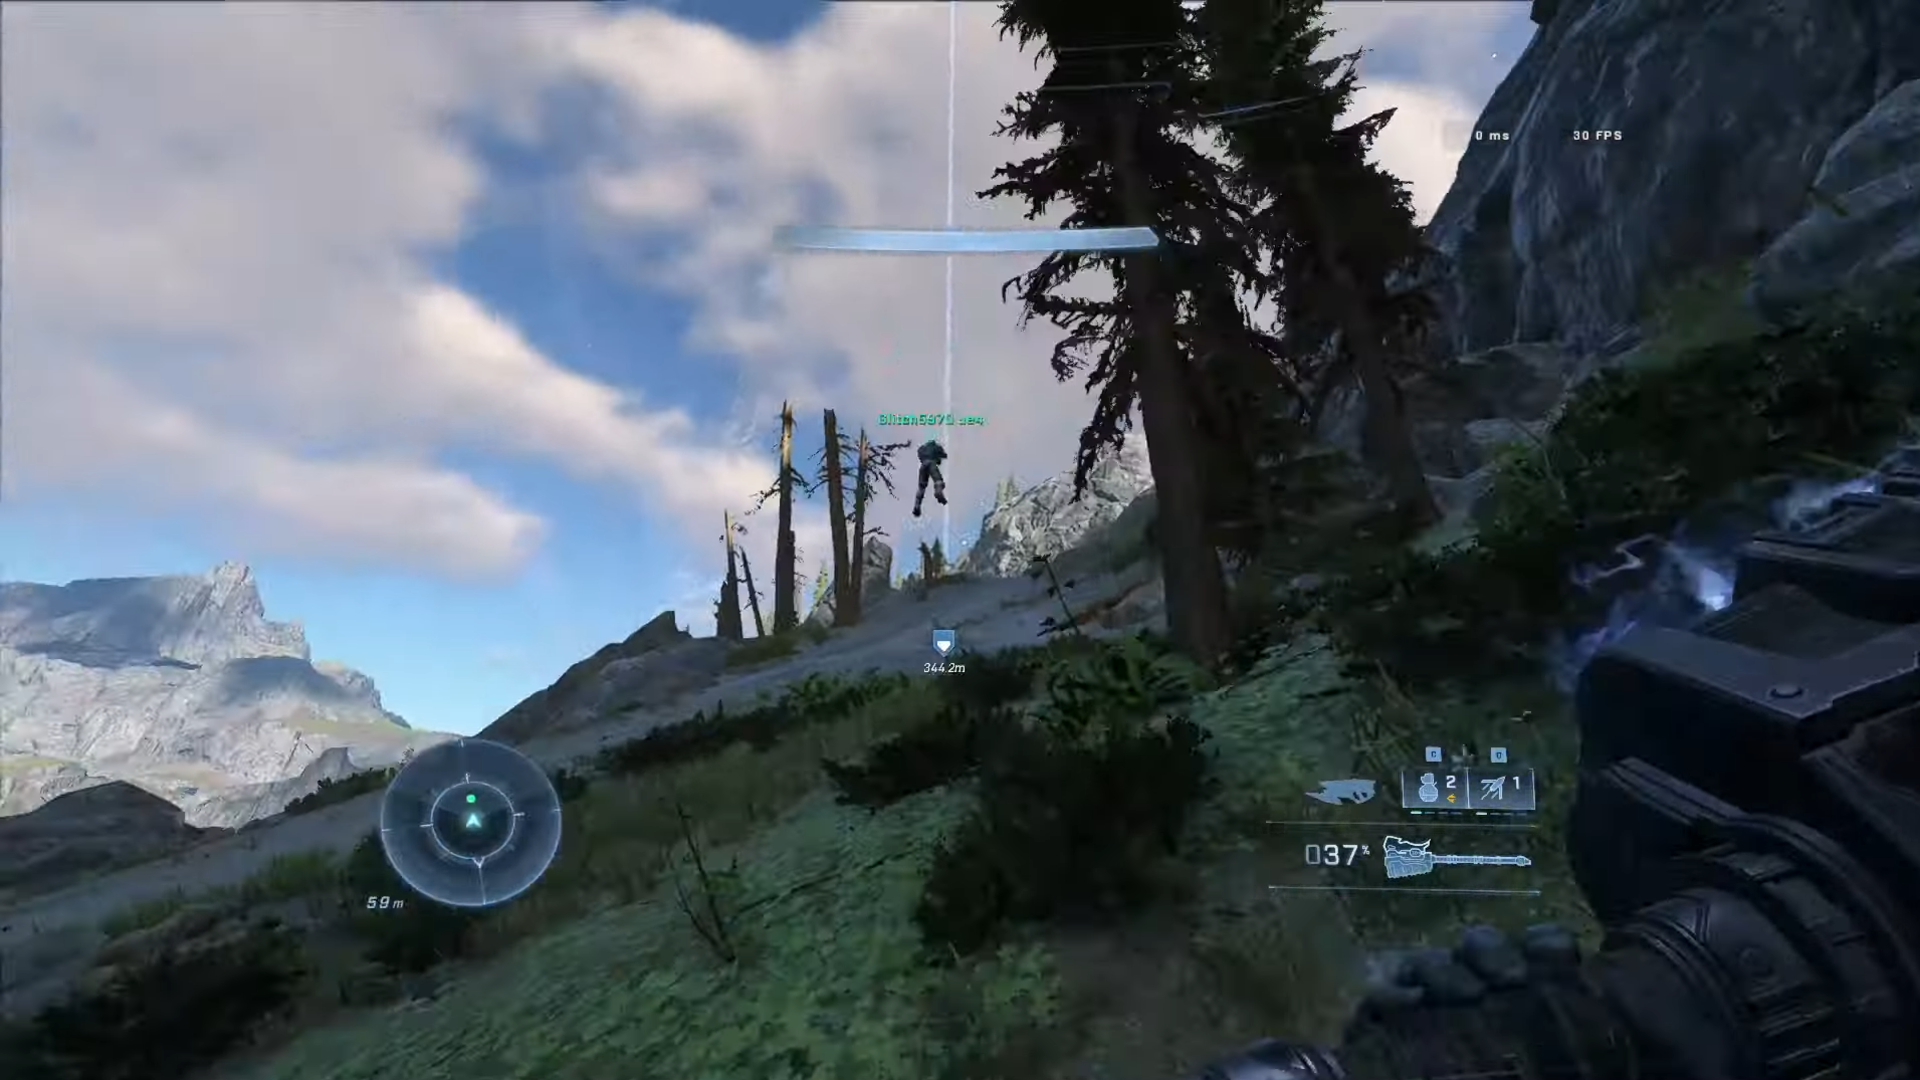 Schermafbeelding van Halo Infinite coöp-gameplay